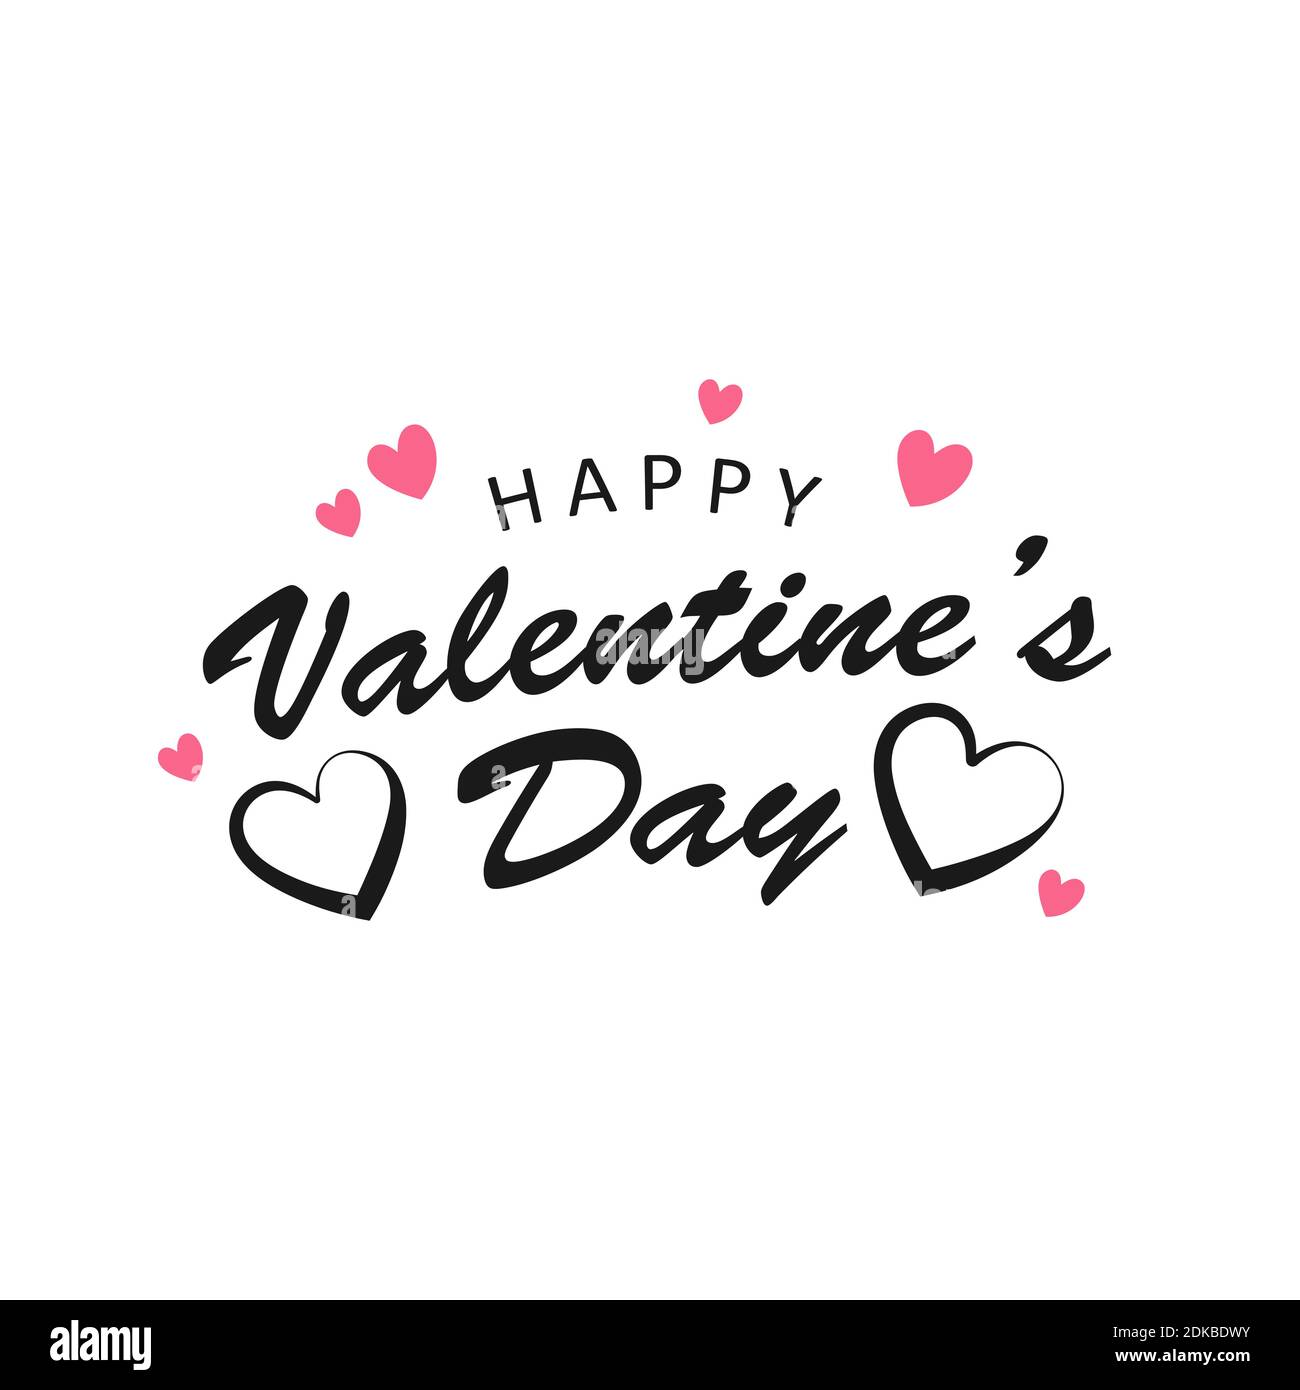 Affiche vectorielle de la Saint Valentin heureuse avec texte de calligraphie manuscrite et cœurs Illustration de Vecteur